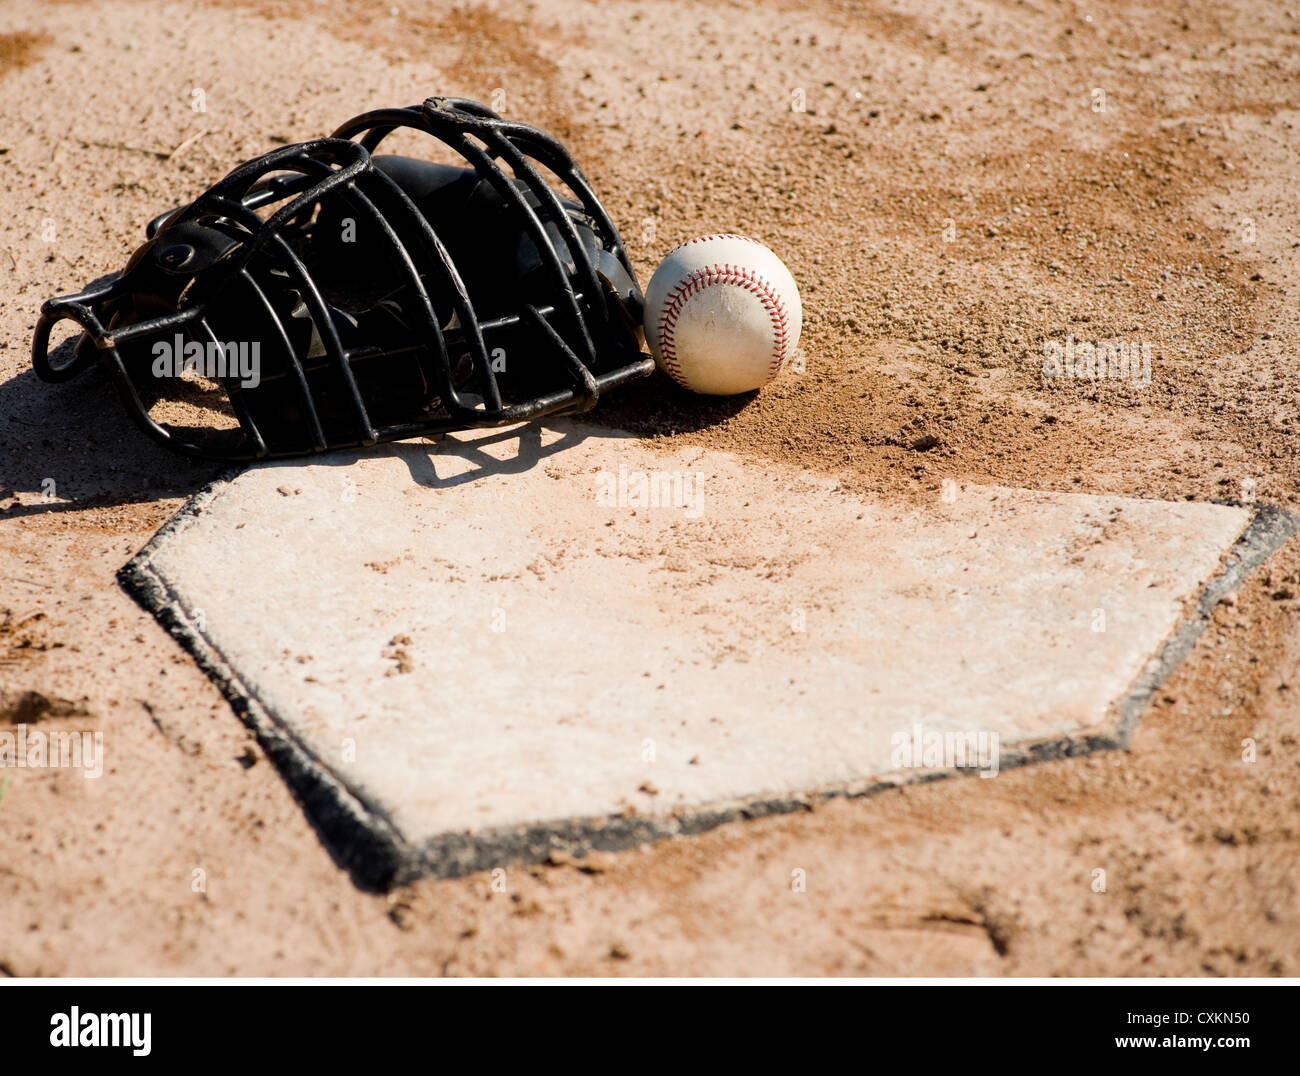 Un masque de protection du baseball baseball et couché sur la plaque sur un terrain de baseball de saleté Banque D'Images